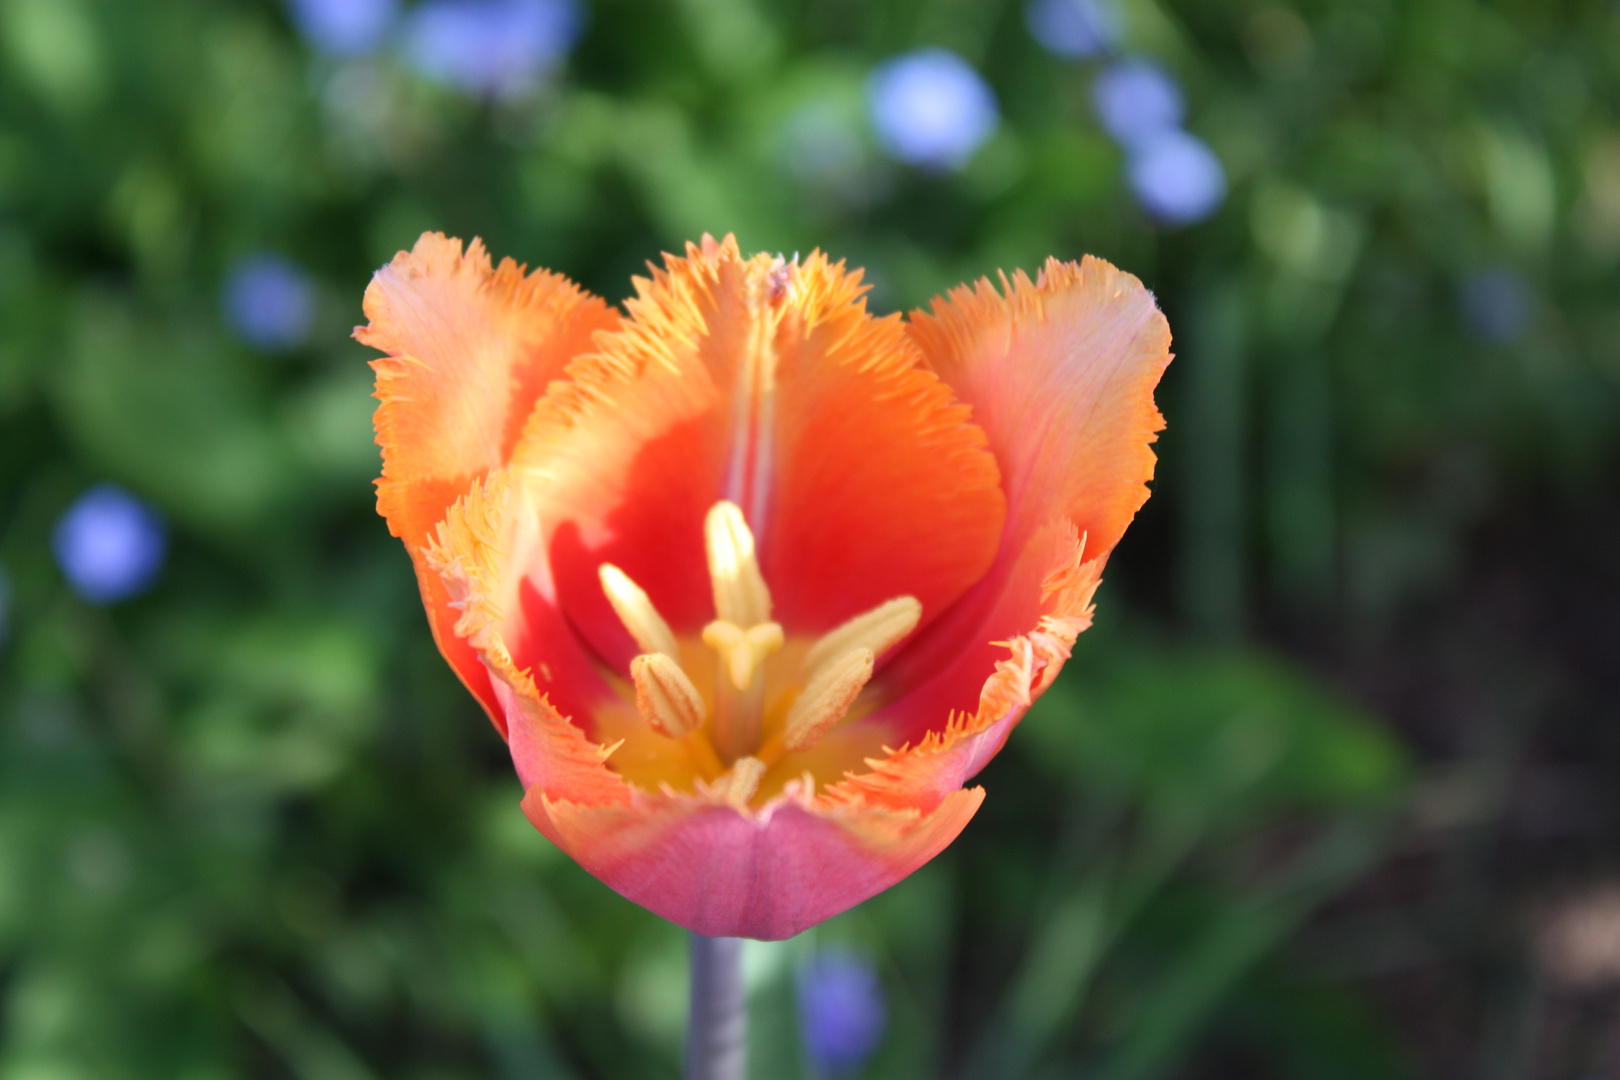 Schöne Tulpe